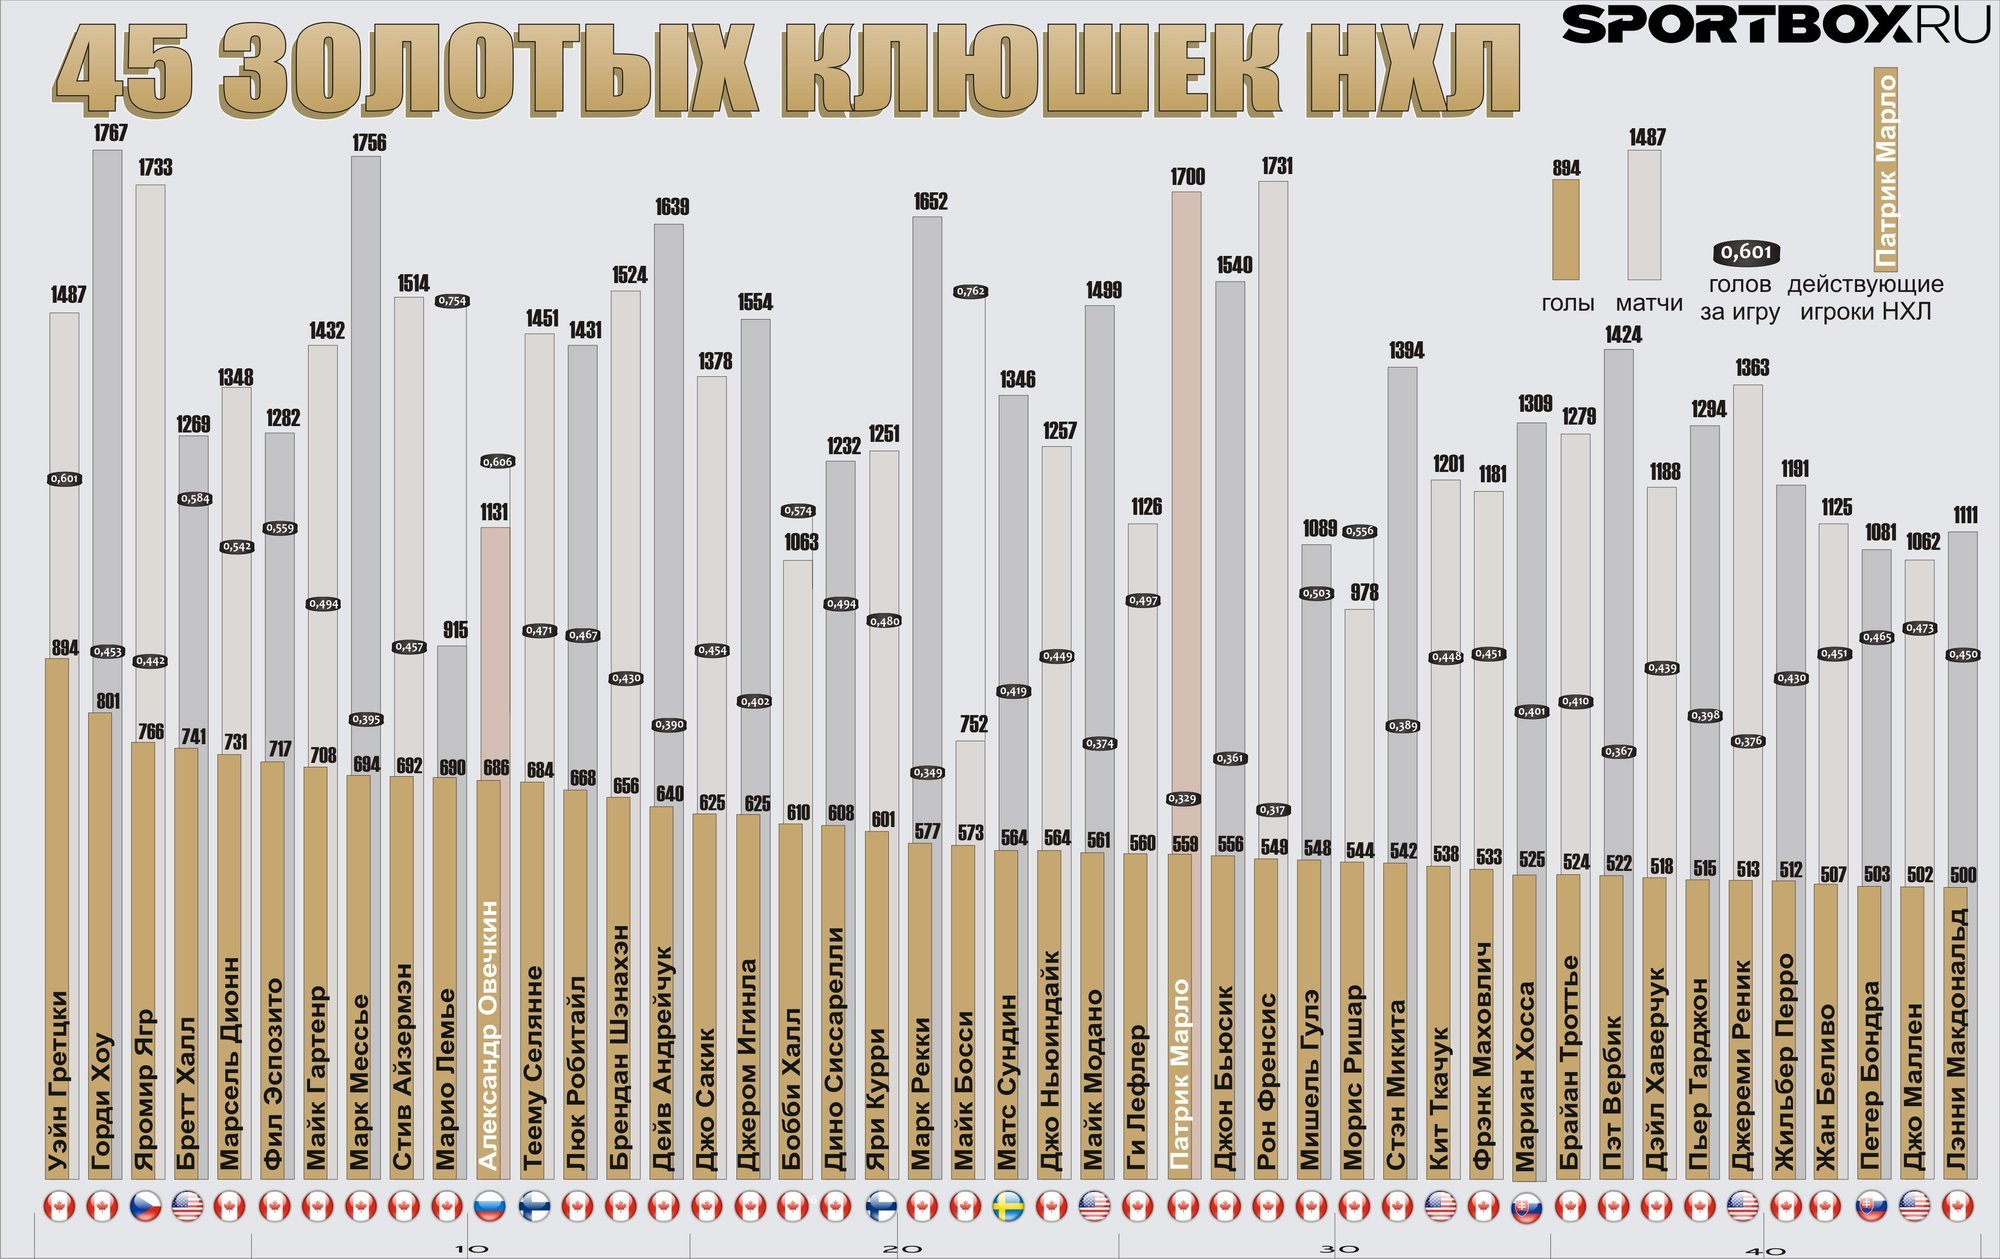 Овечкин статистика в нхл за всю историю. НХЛ статистика игроков за всю историю Снайперы. Лучшие Снайперы НХЛ. Таблица снайперов НХЛ. Список снайперов НХЛ за всю историю.